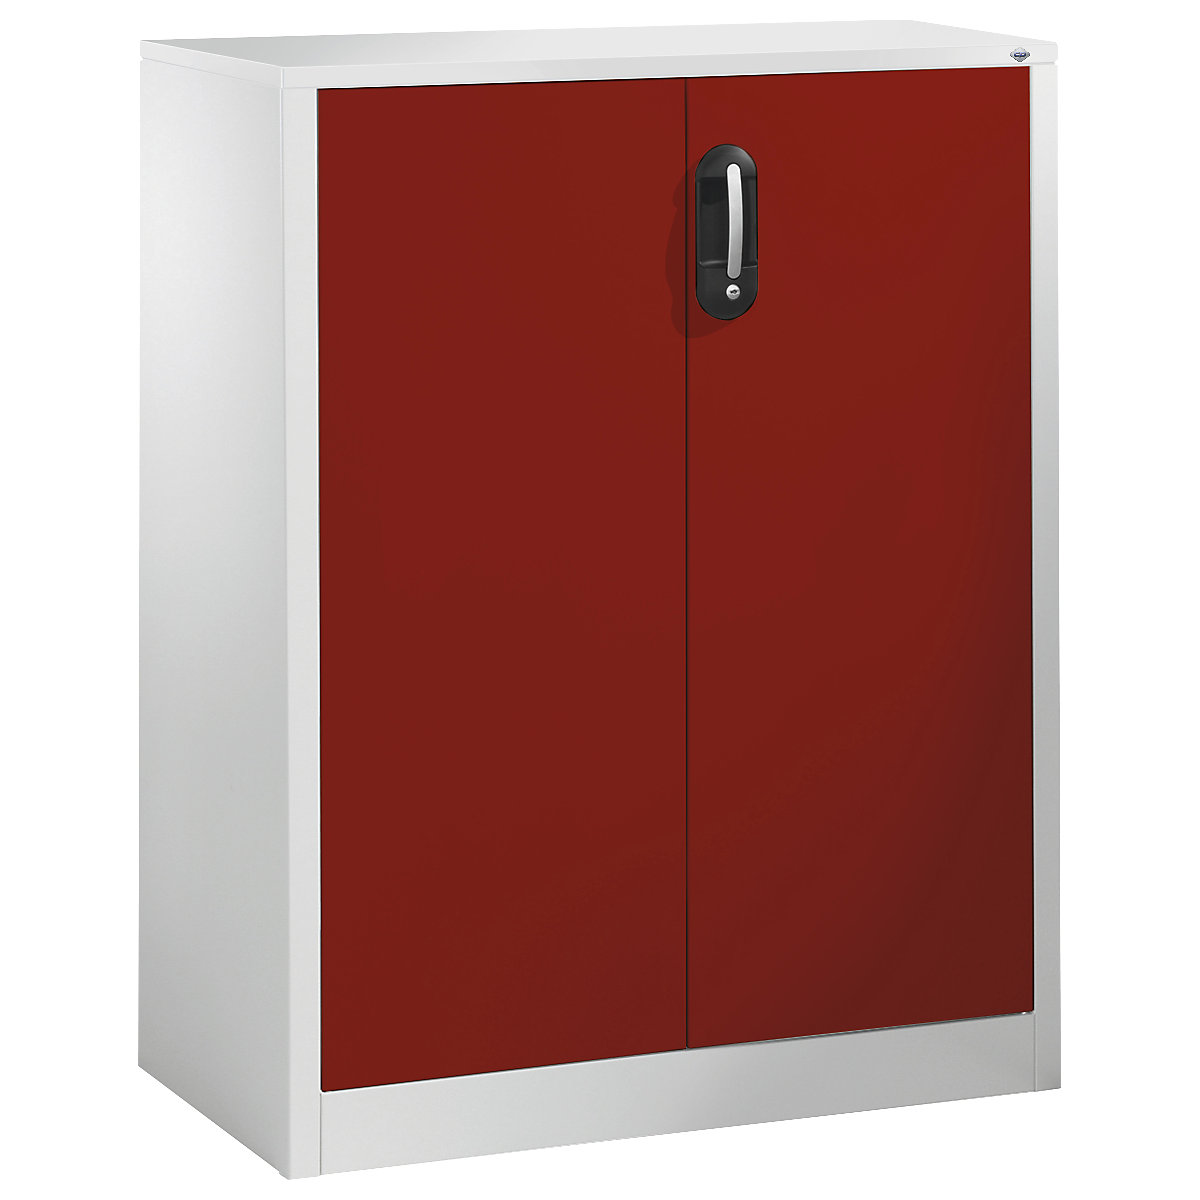 Bočná skrinka na spisy ACURADO – C+P, 3 výšky zakladačov, v x š x h 1200 x 930 x 400 mm, svetlošedá / rubínová červená-14